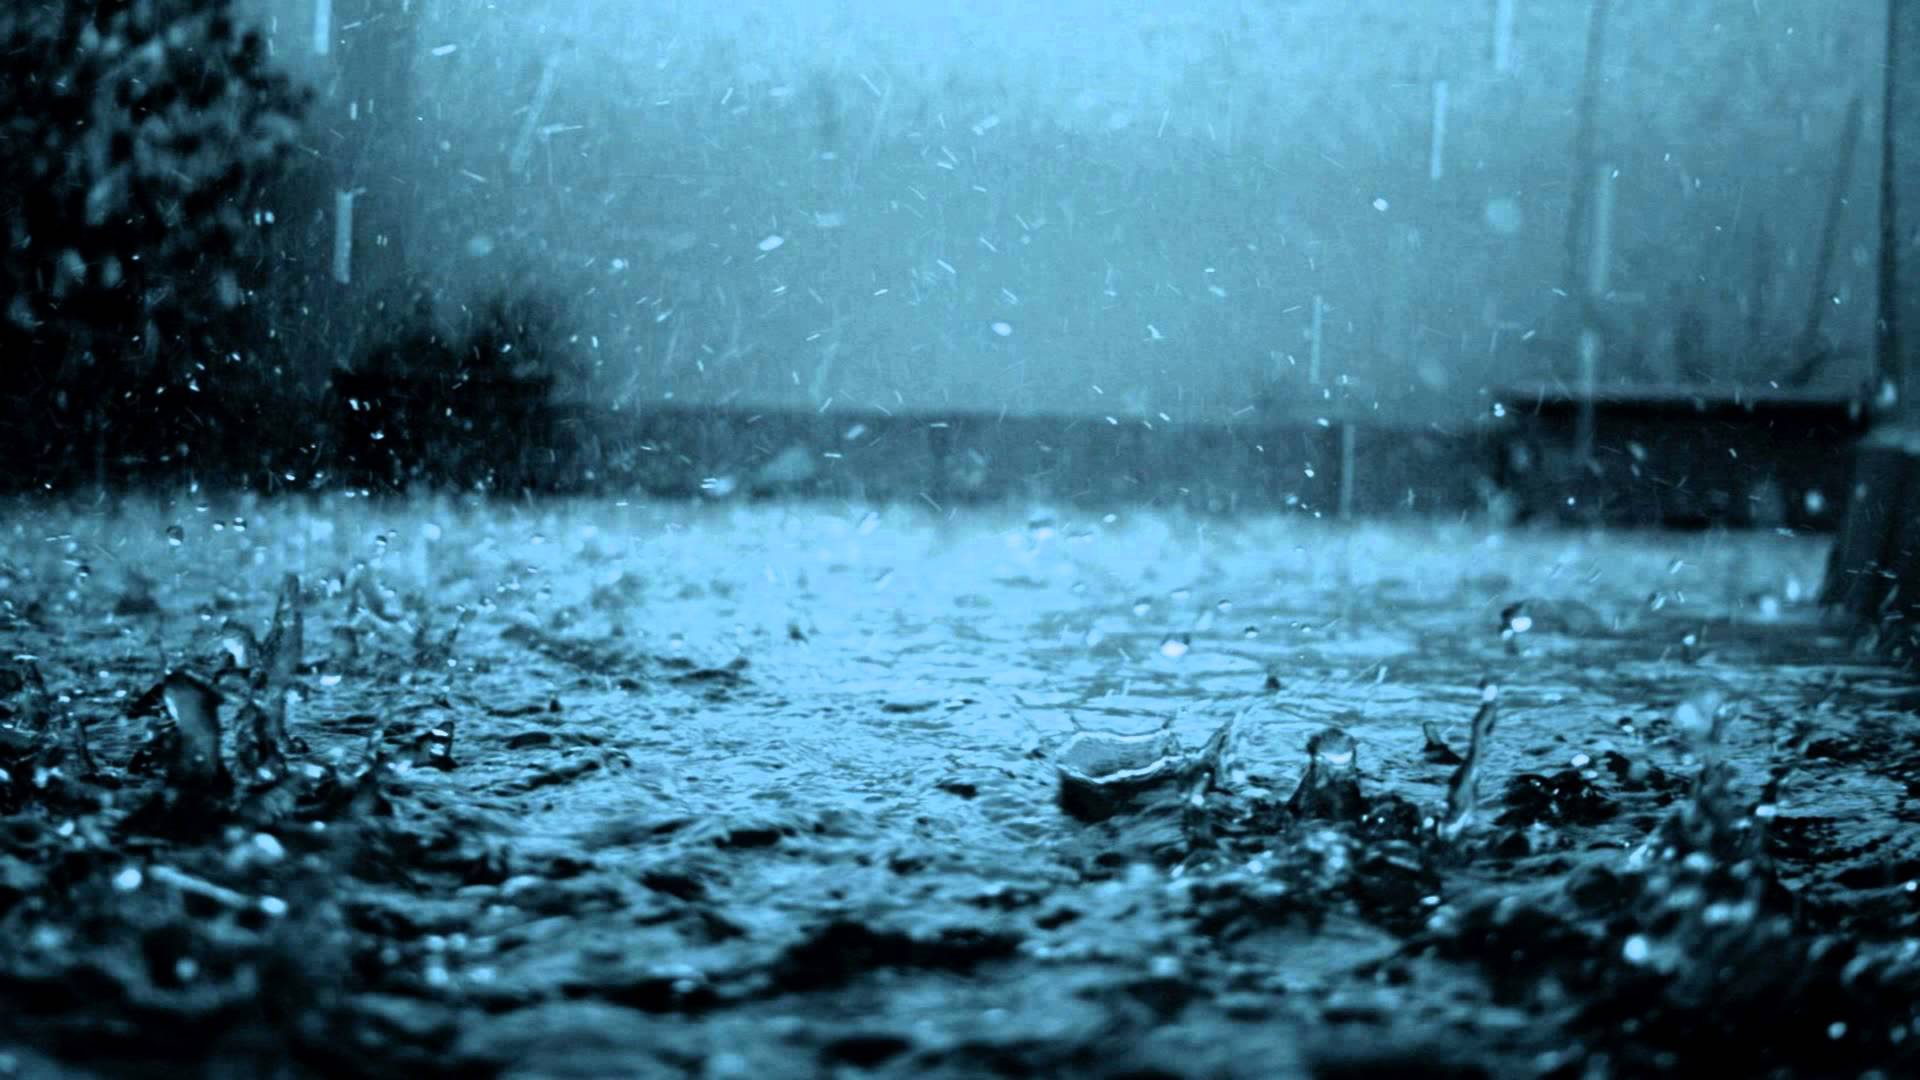 Linkin Park - In The End [Rainy Mood][Piano] - YouTube